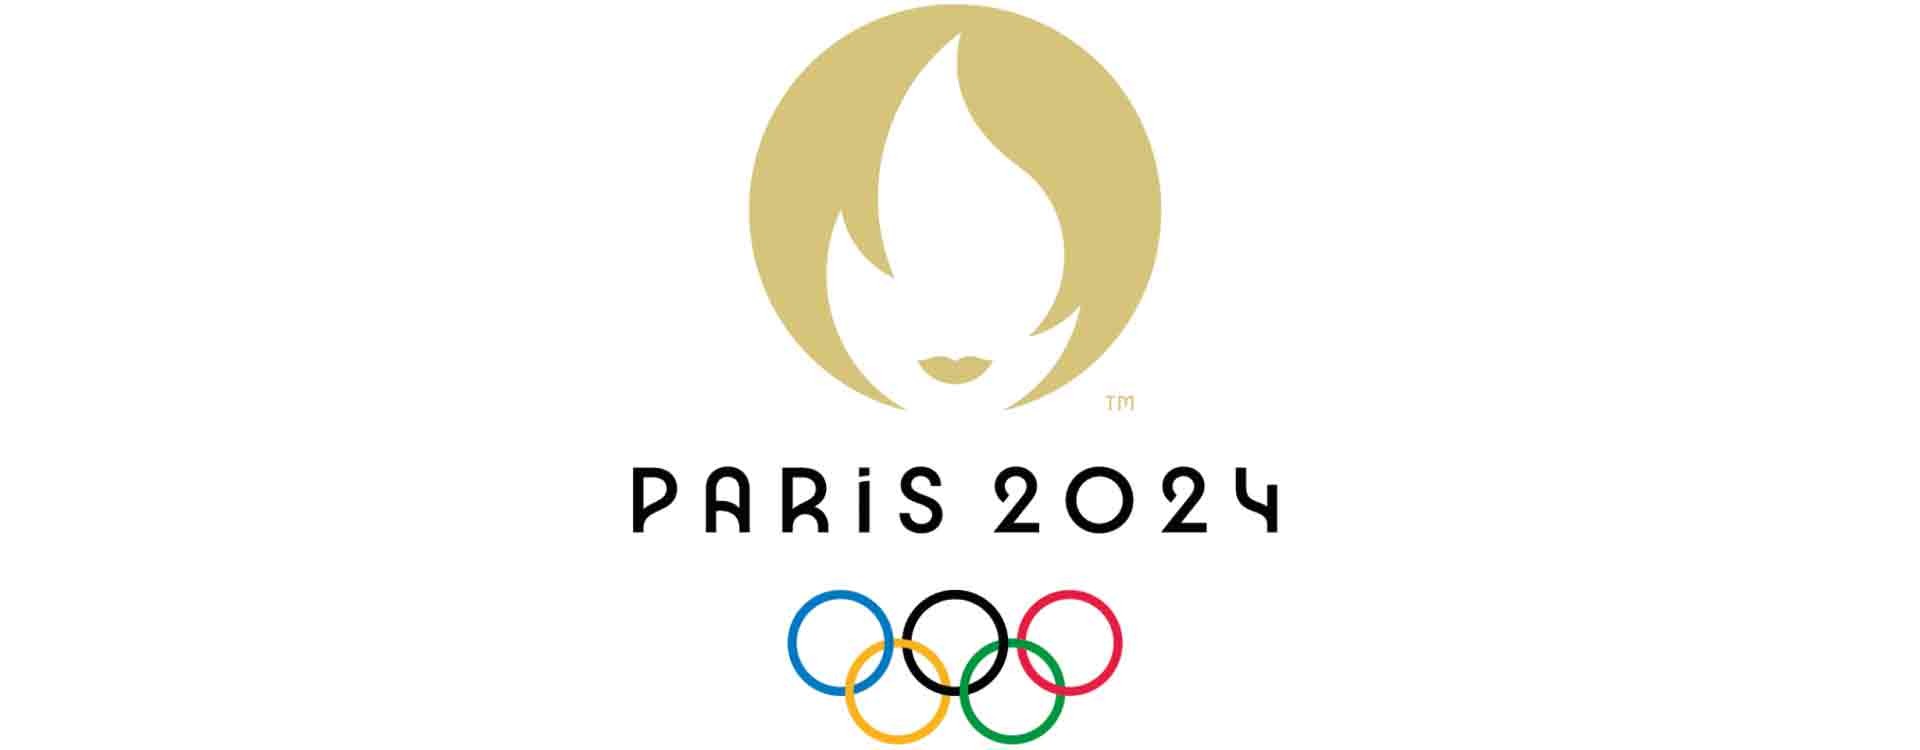 Blister emblème olympique - Jeux Olympiques de Paris 2024 - JO - La Poste